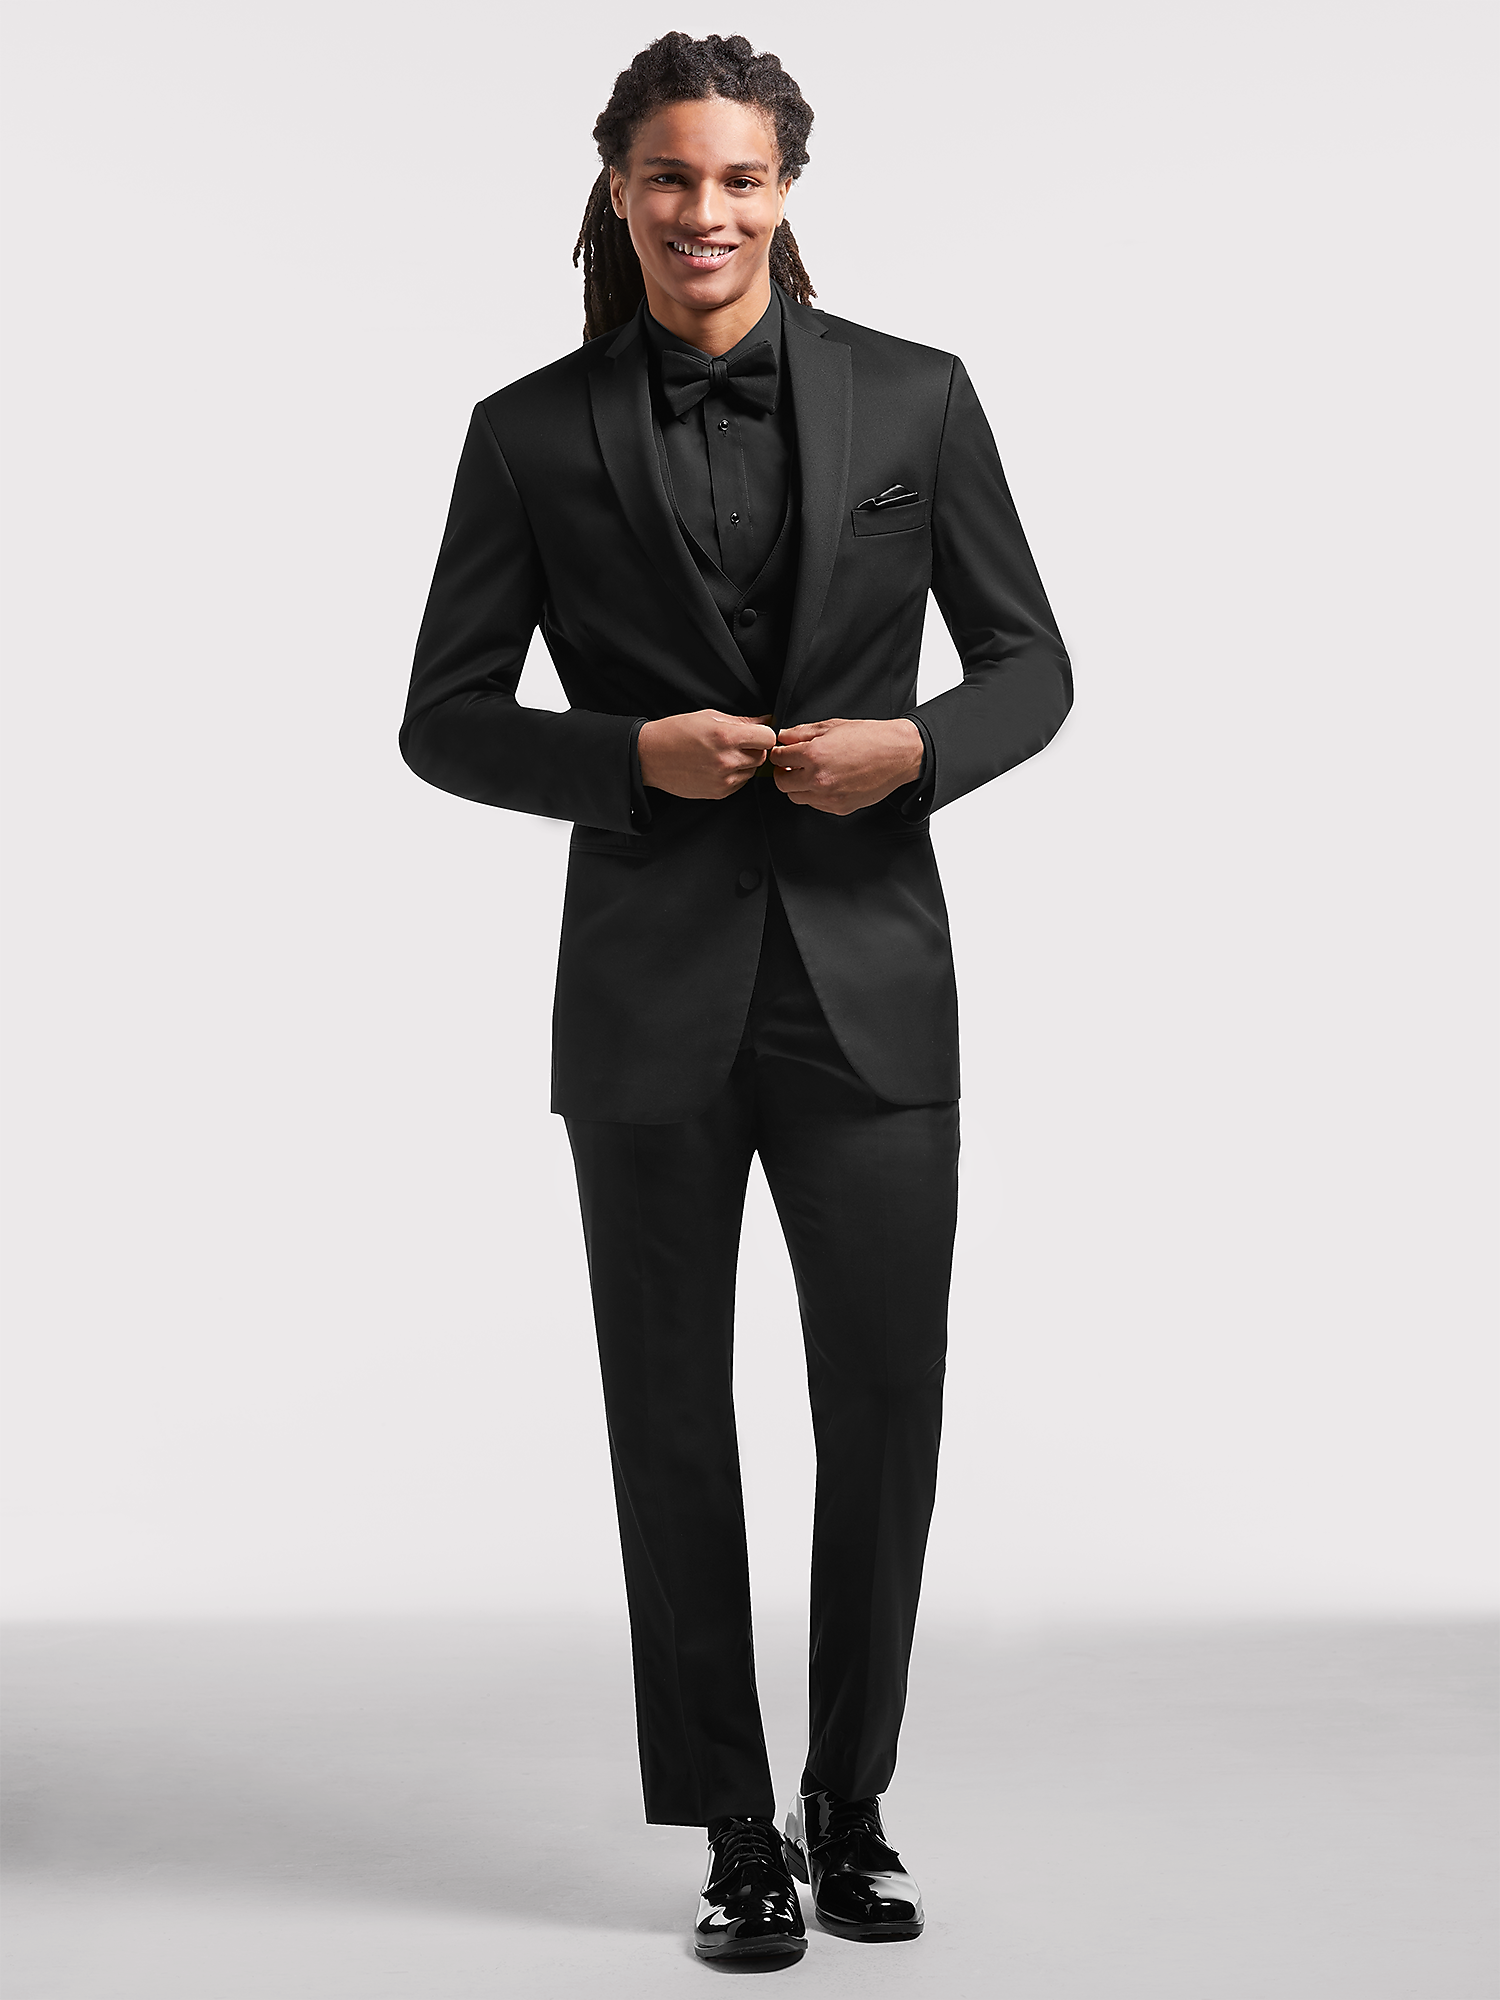 Boys Size Black Joseph Abboud Tuxedo With Flat Front Pants Silver Vest & Tie 